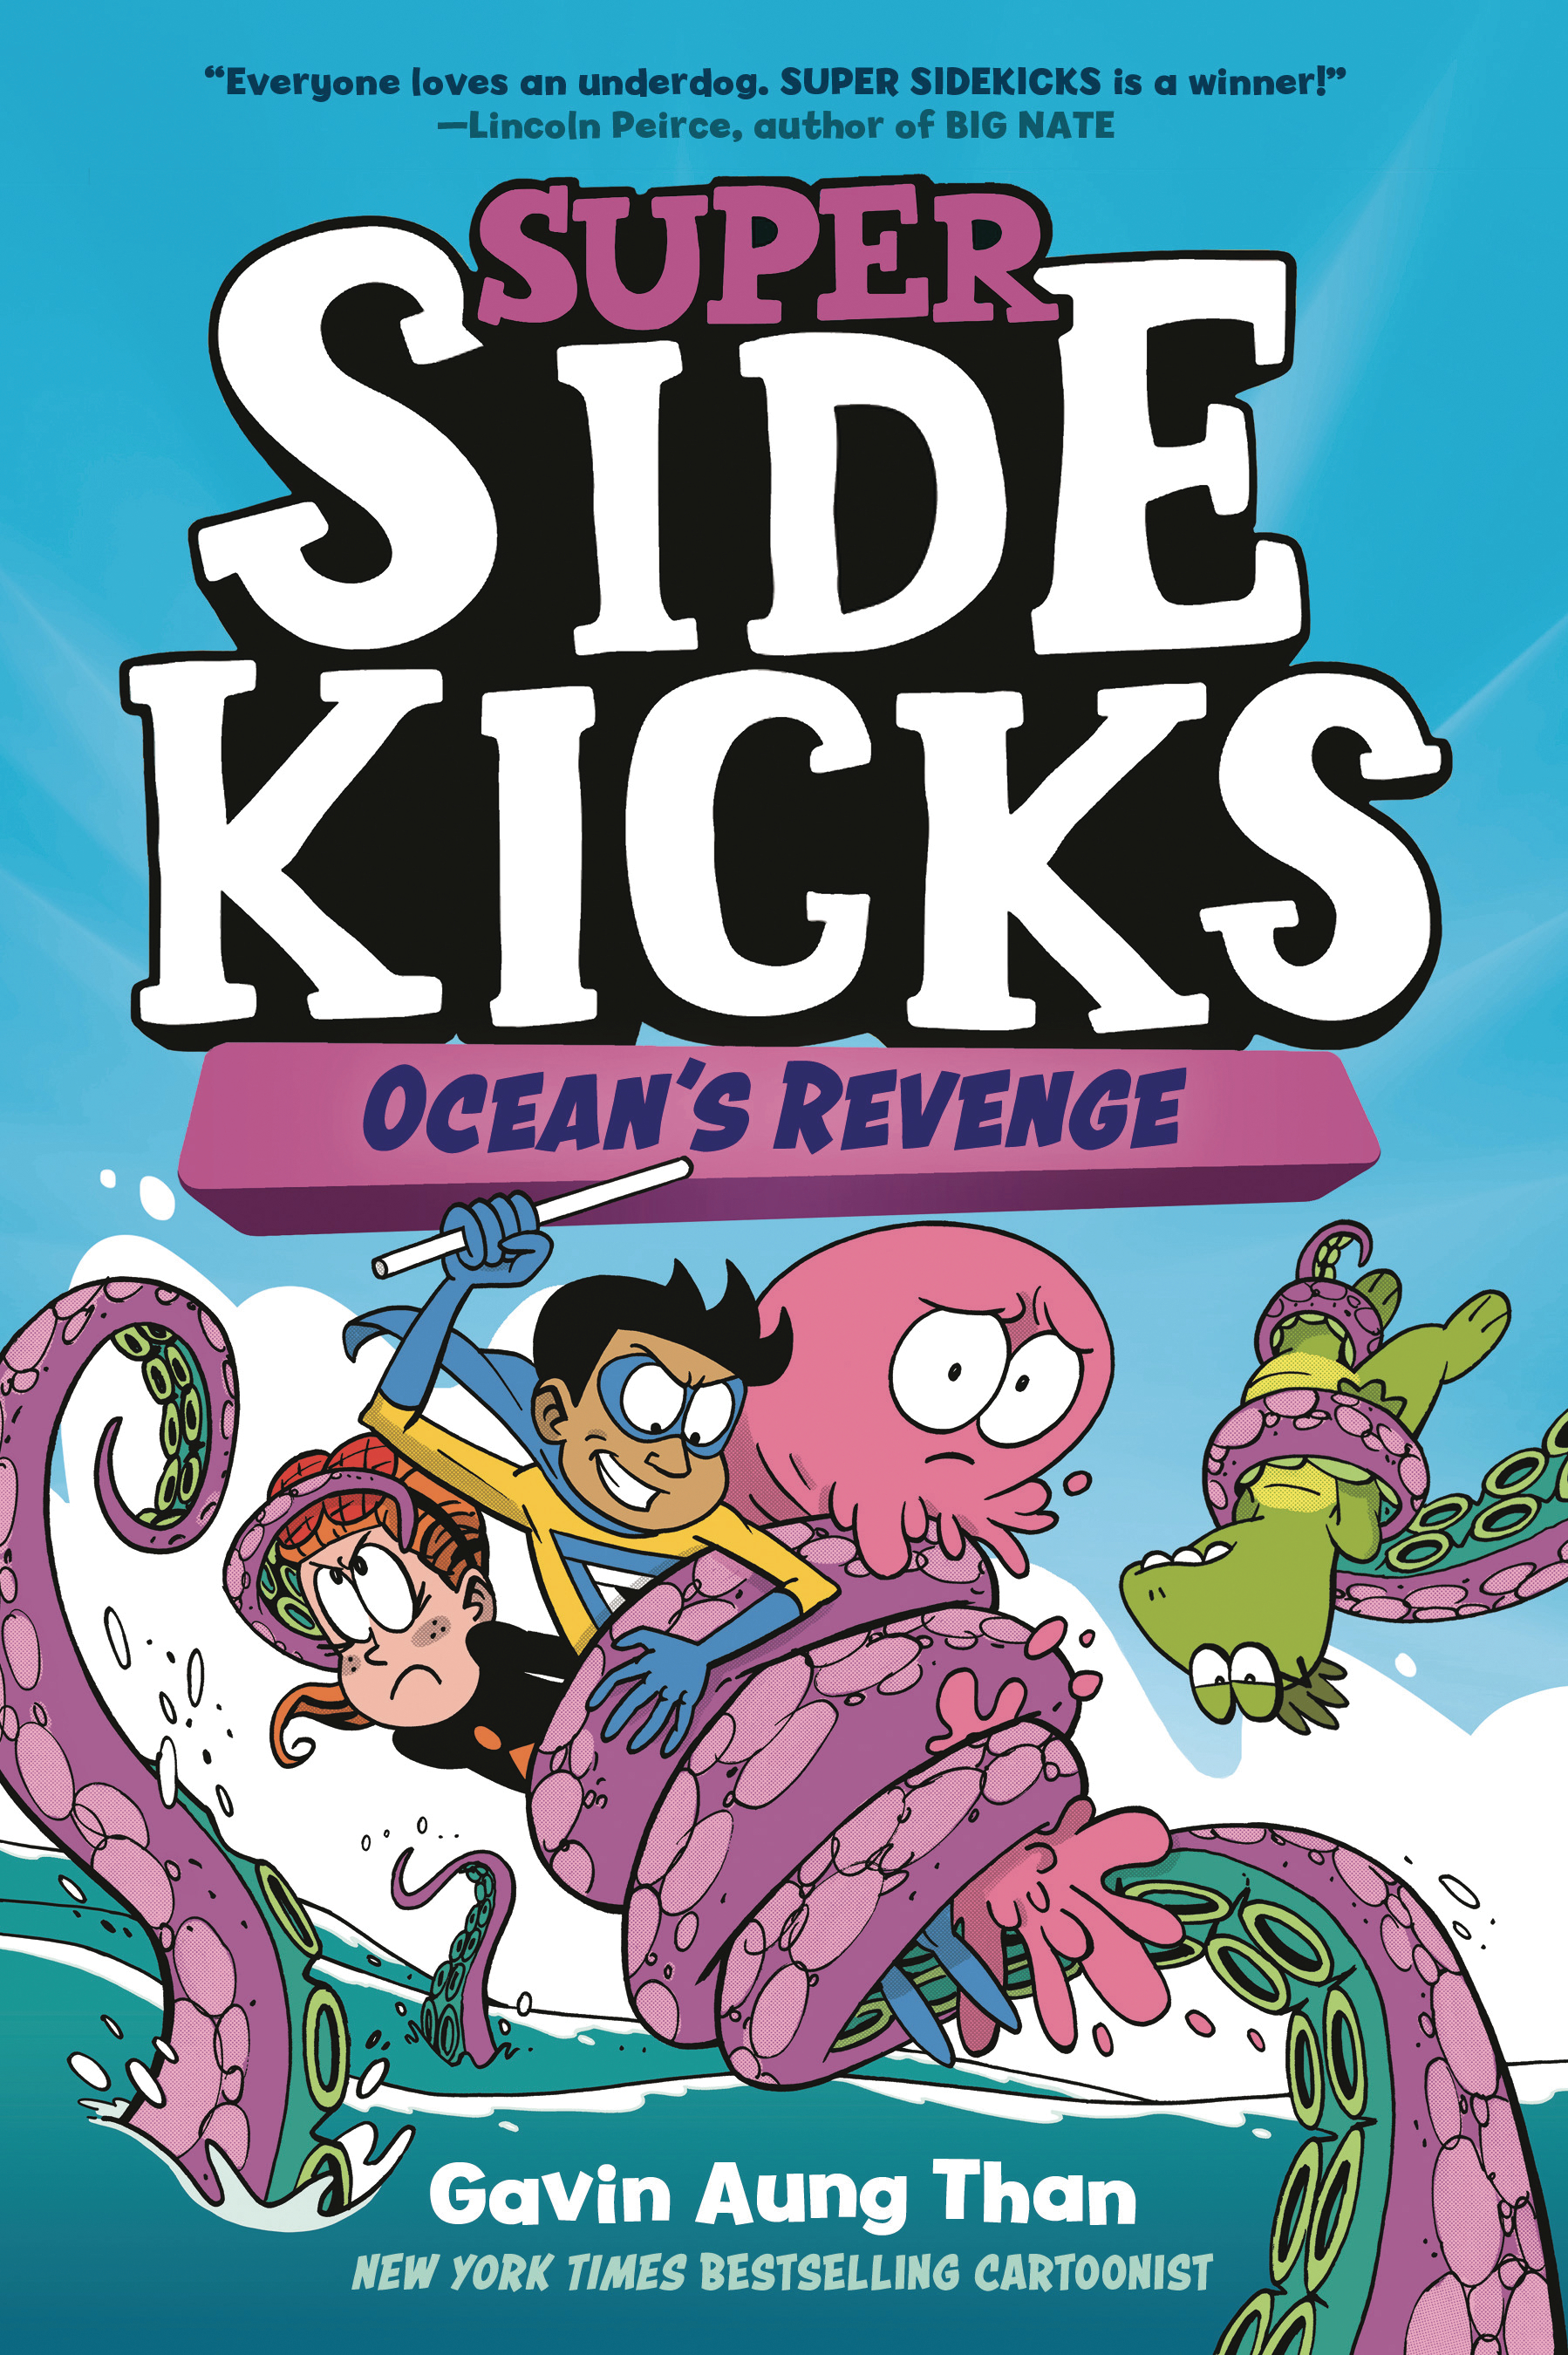 Super Sidekicks Hardcover Graphic Novel Volume 2 Oceans Revenge